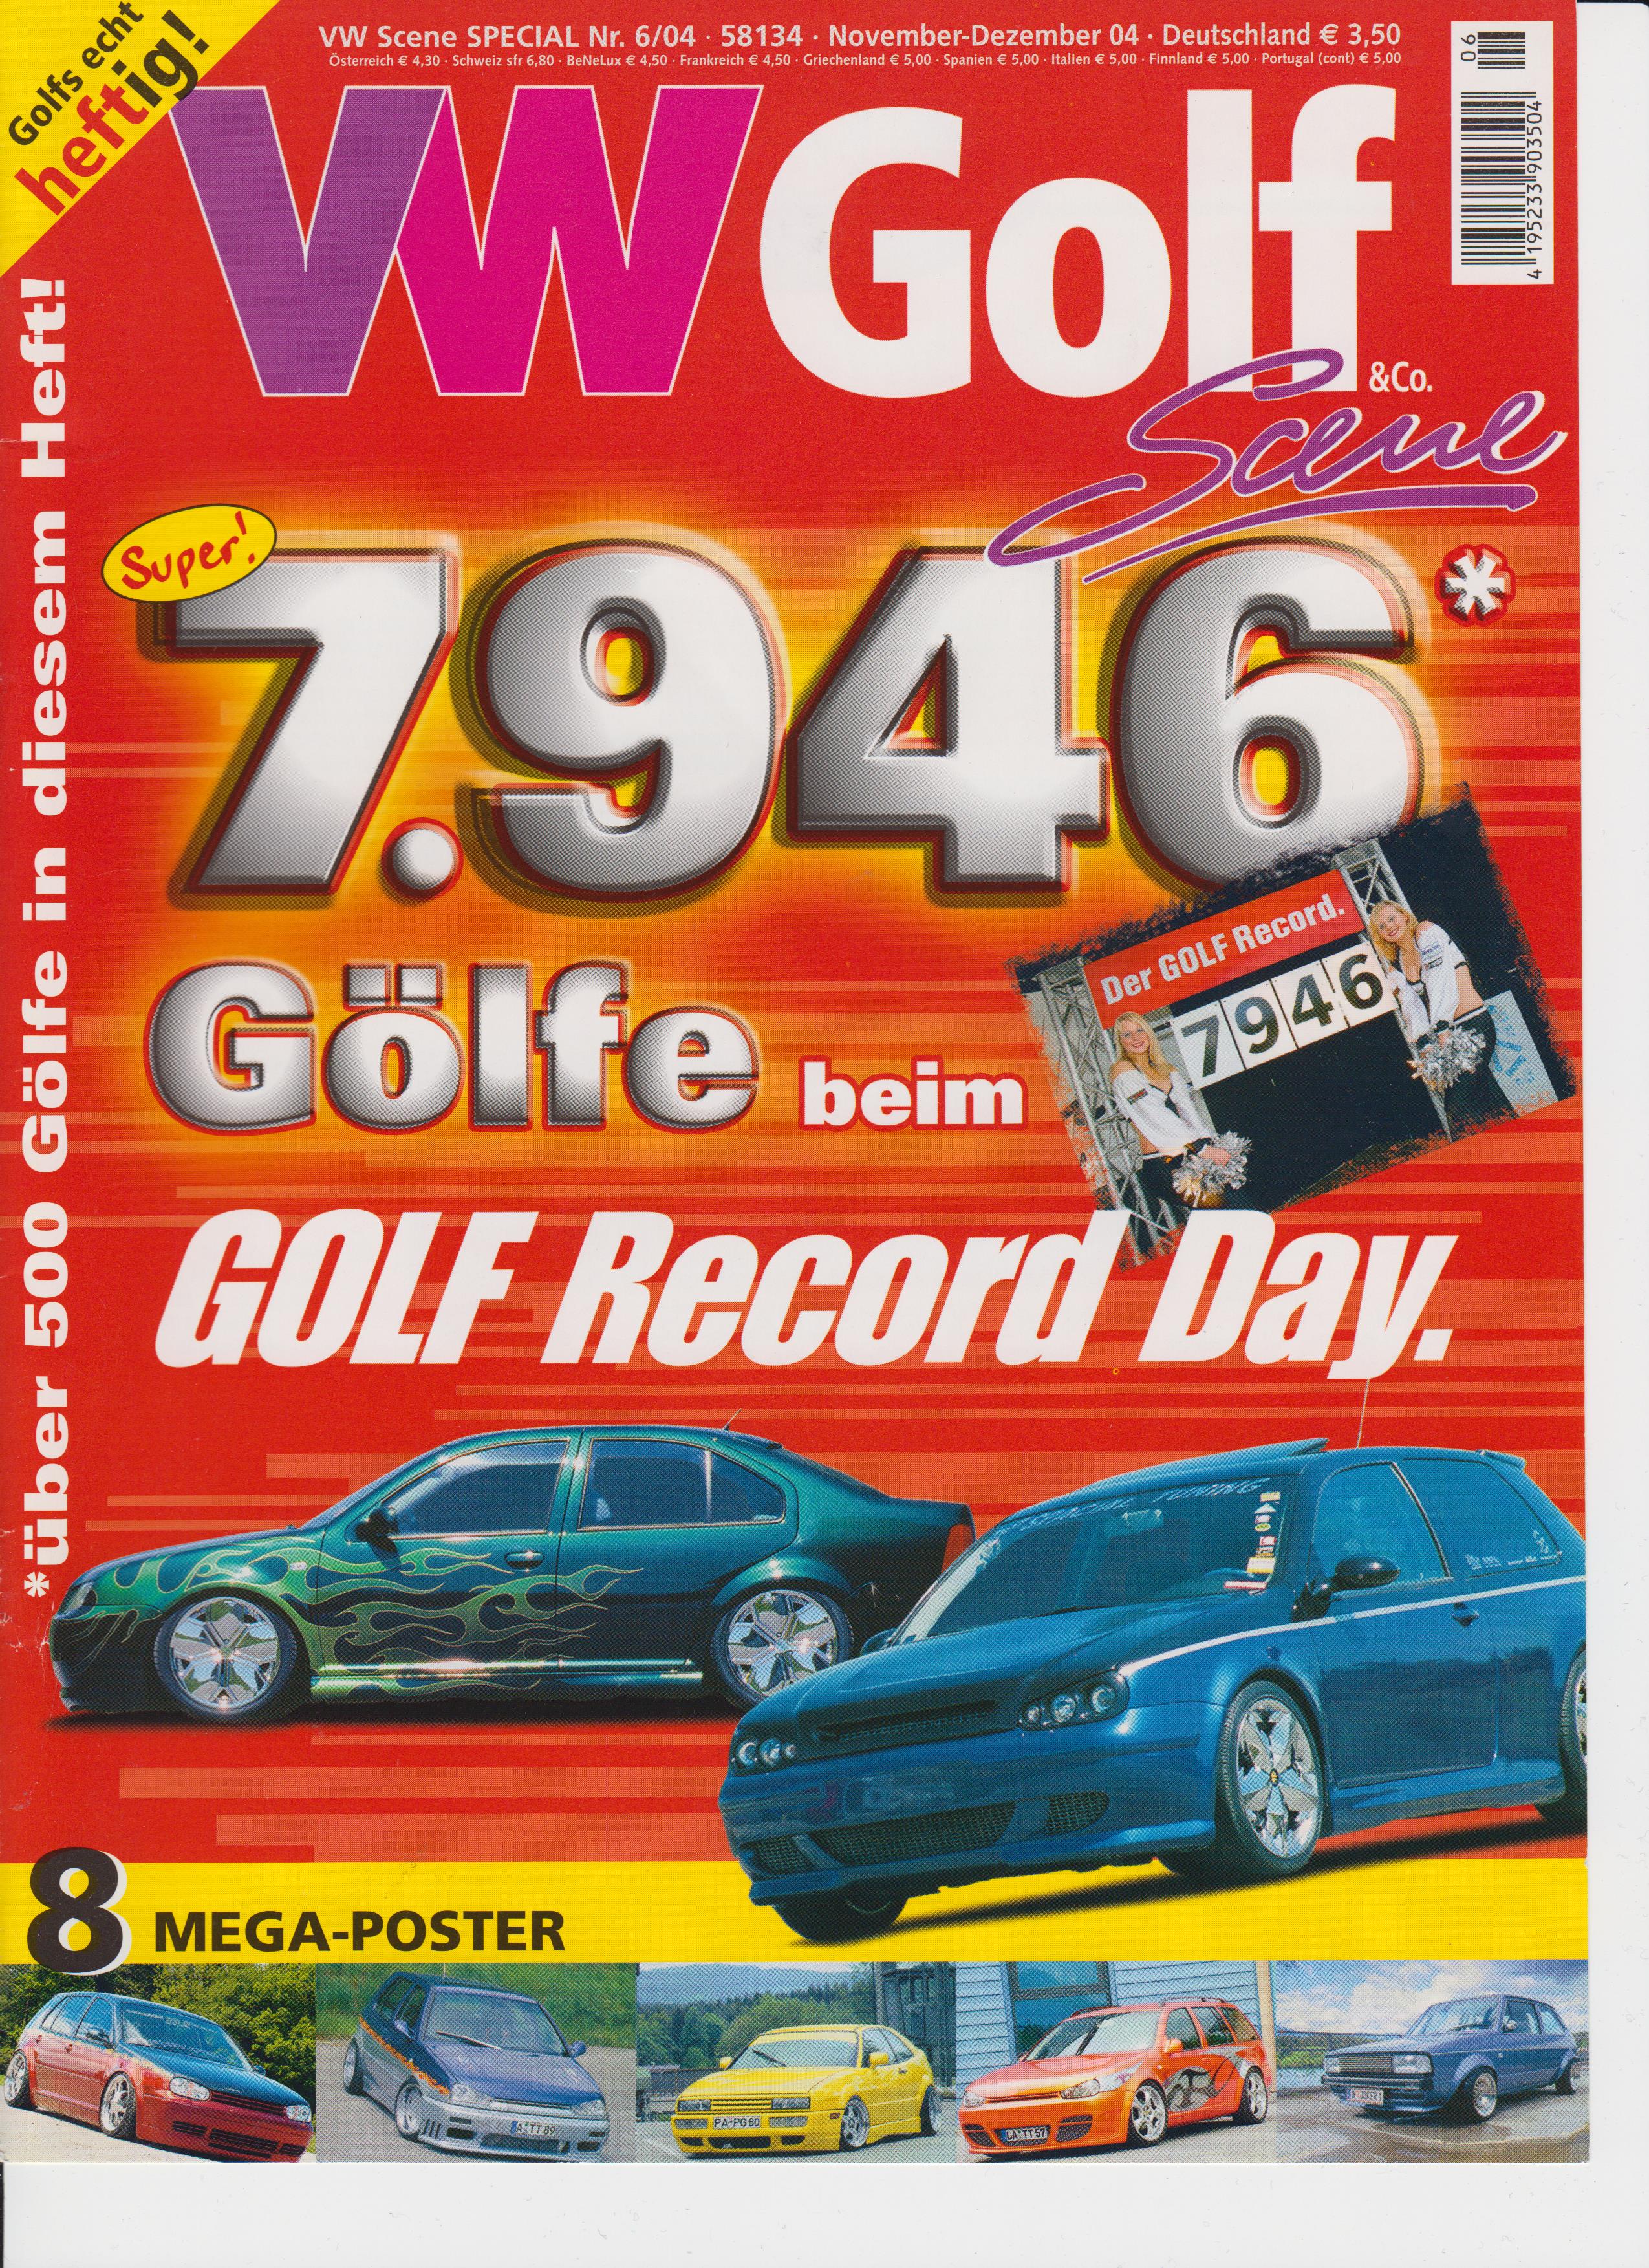 Fachzeitschrift VW Golf 06 2004